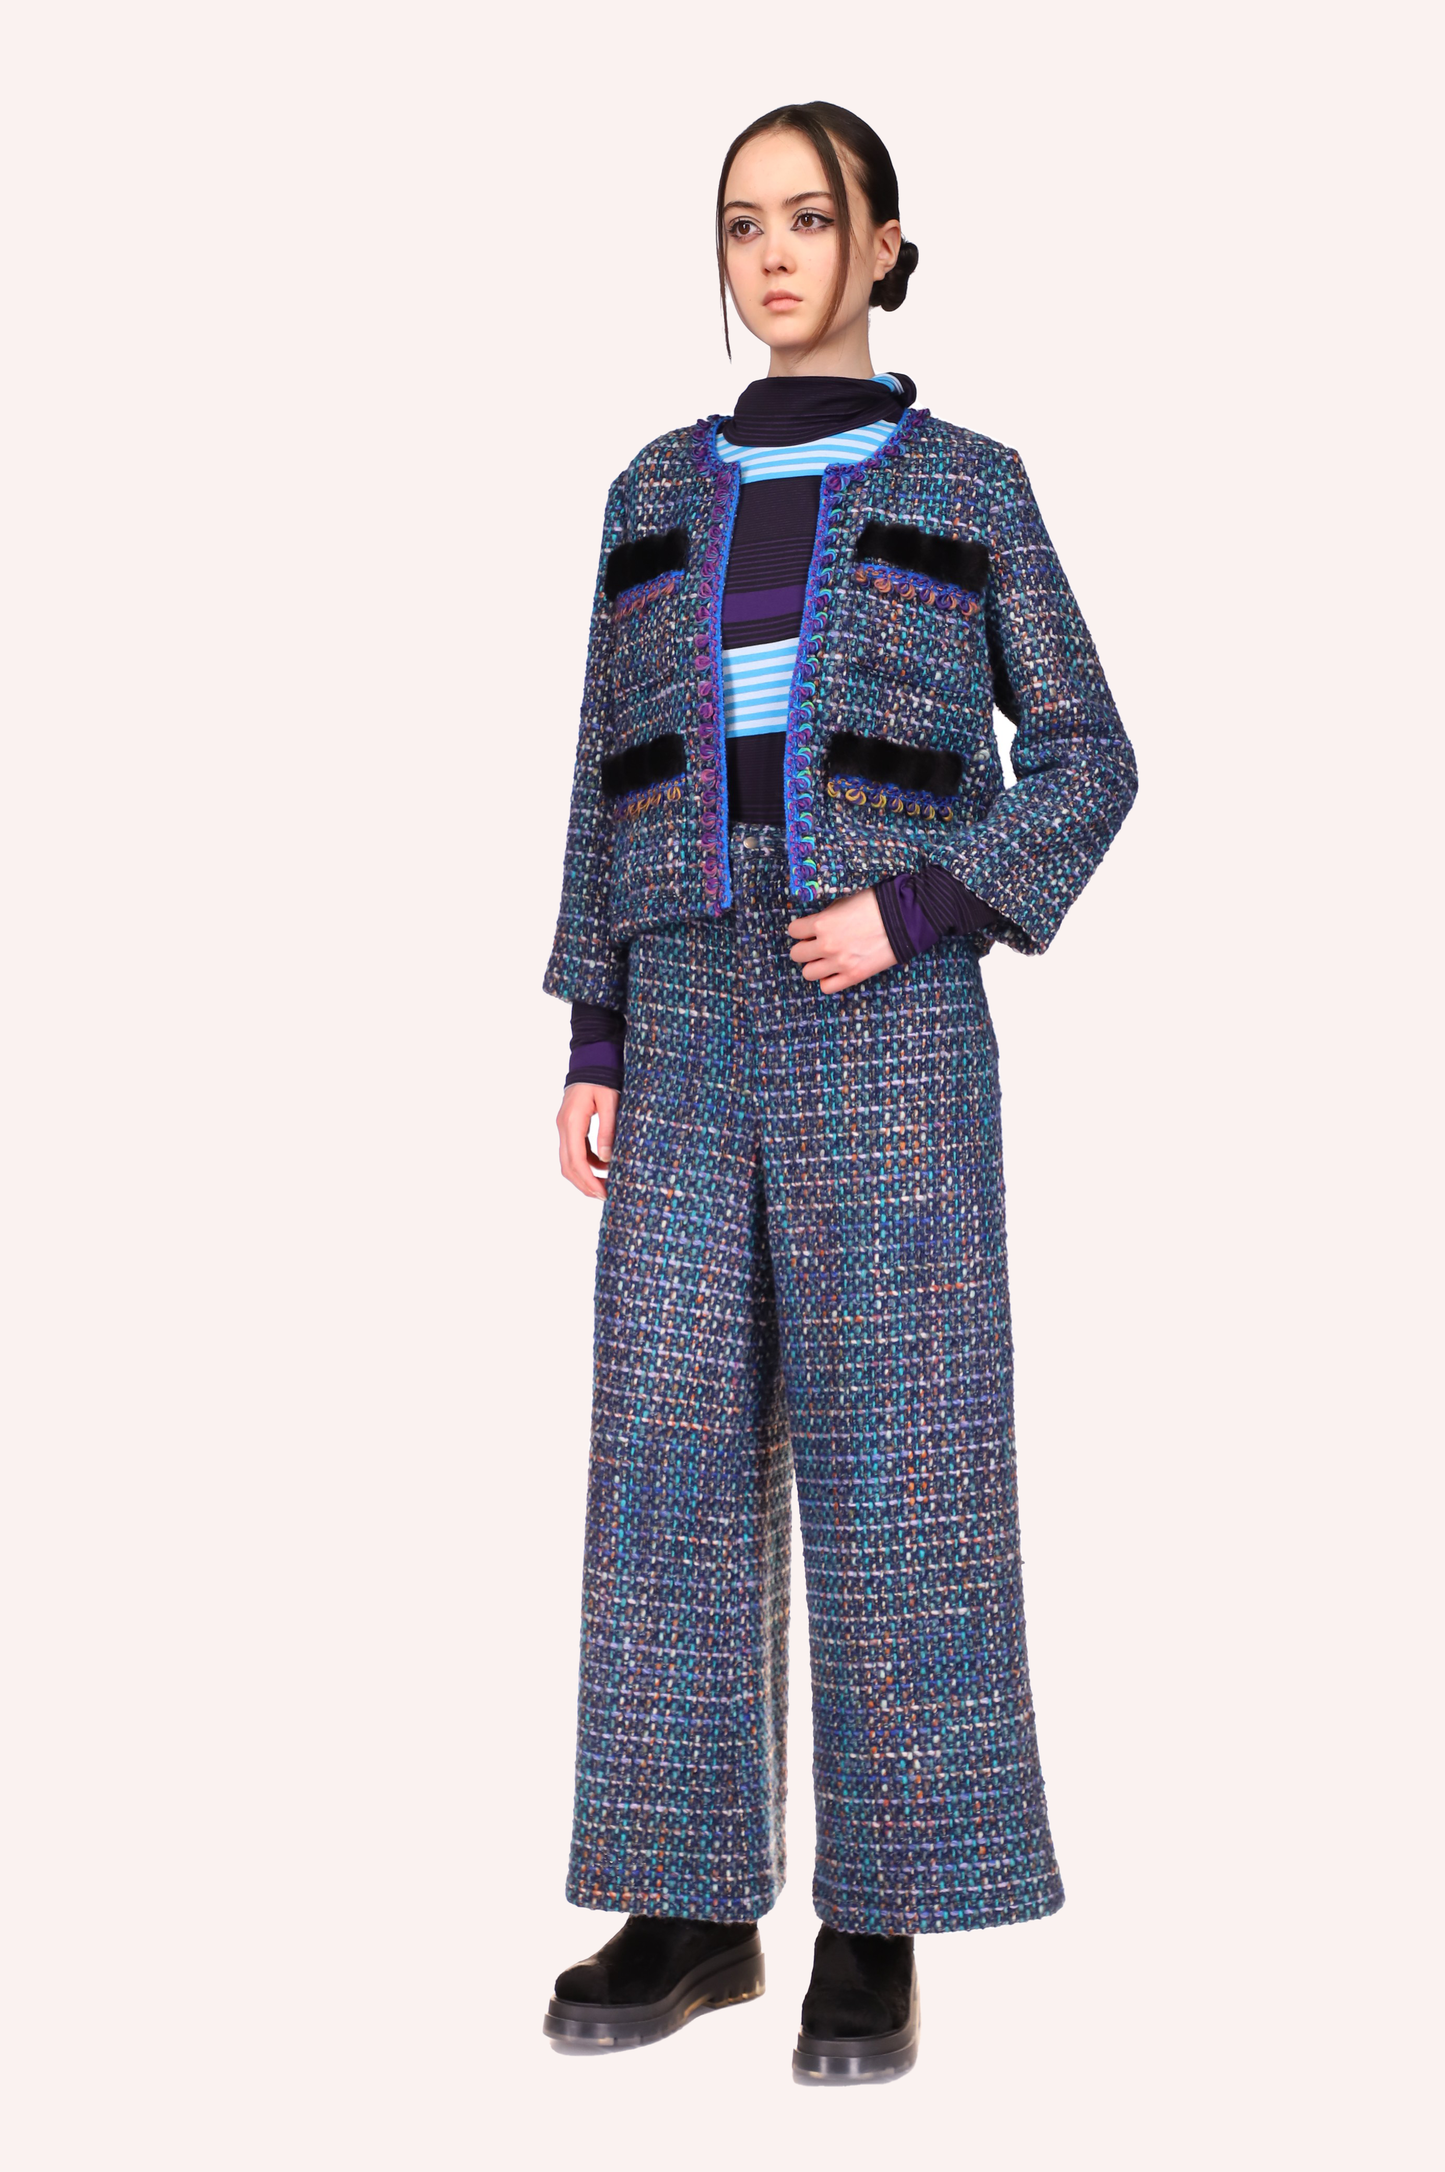 Pantalon en tweed Turquoise, pantalon large, chevilles longues, bouton argenté pour fermer, fermeture à glissière cachée sur le devant.